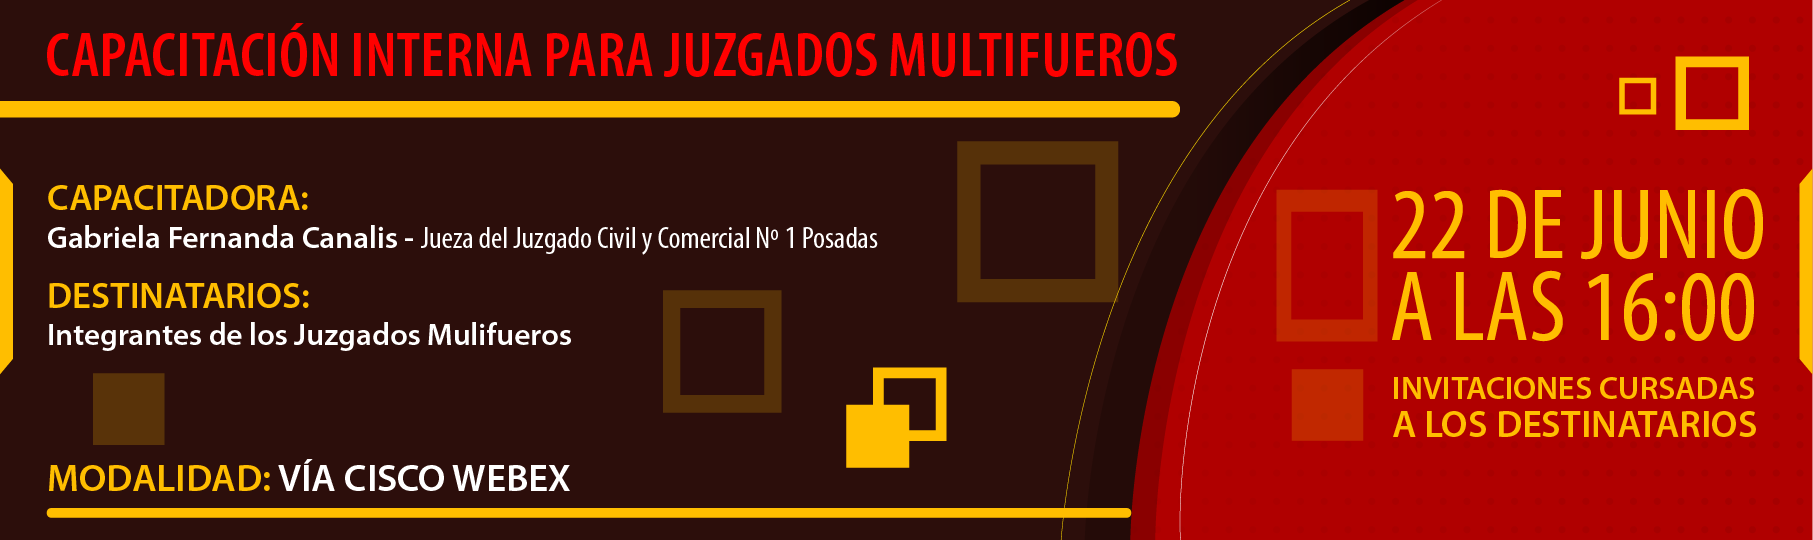 Cap_Juzgados_Multifuero-01